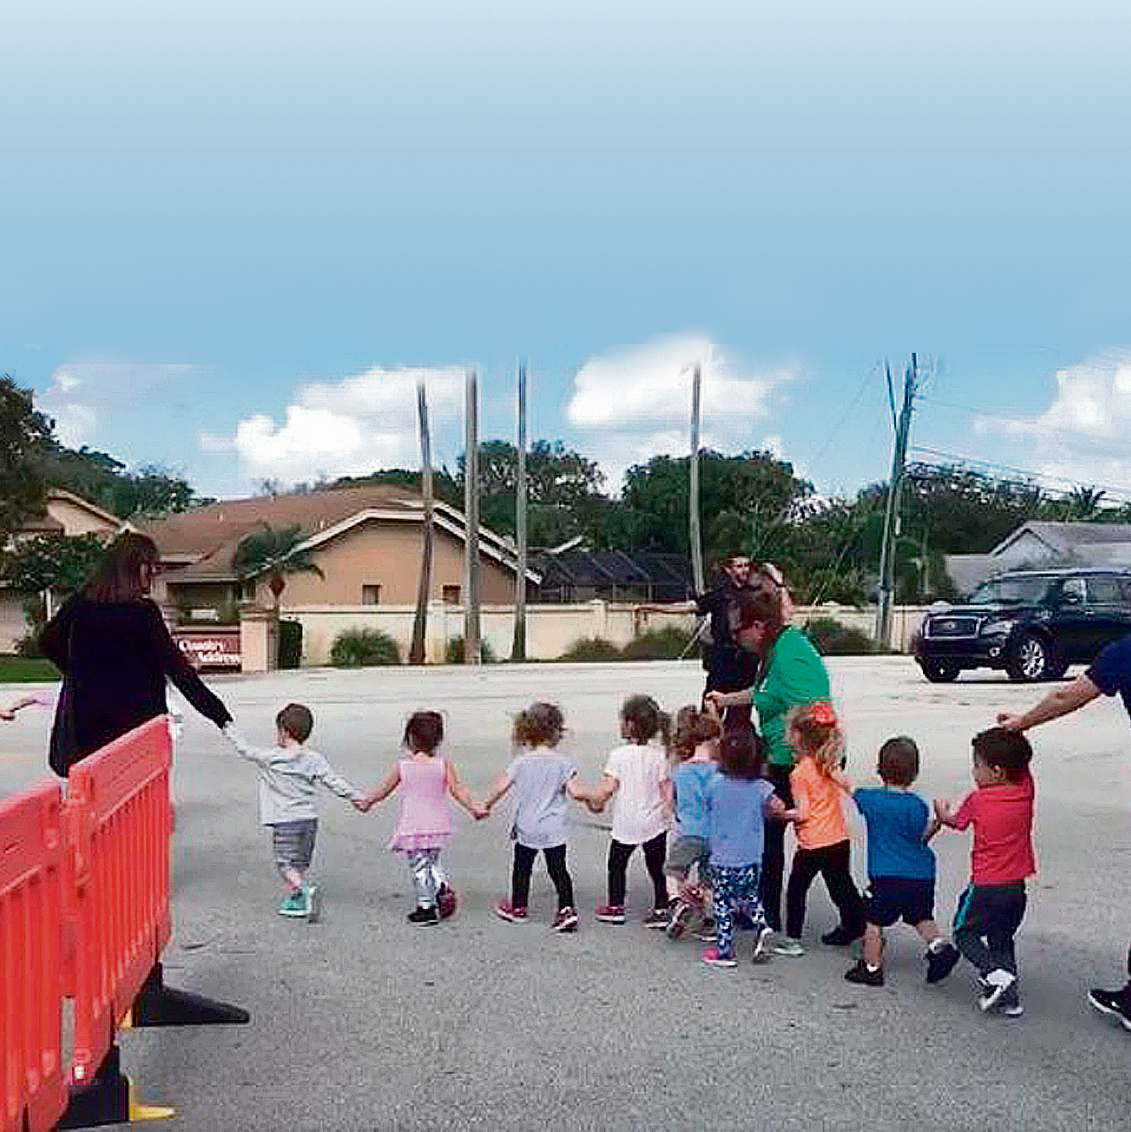 Children evacuated from a Jewish kindergarten in Florida